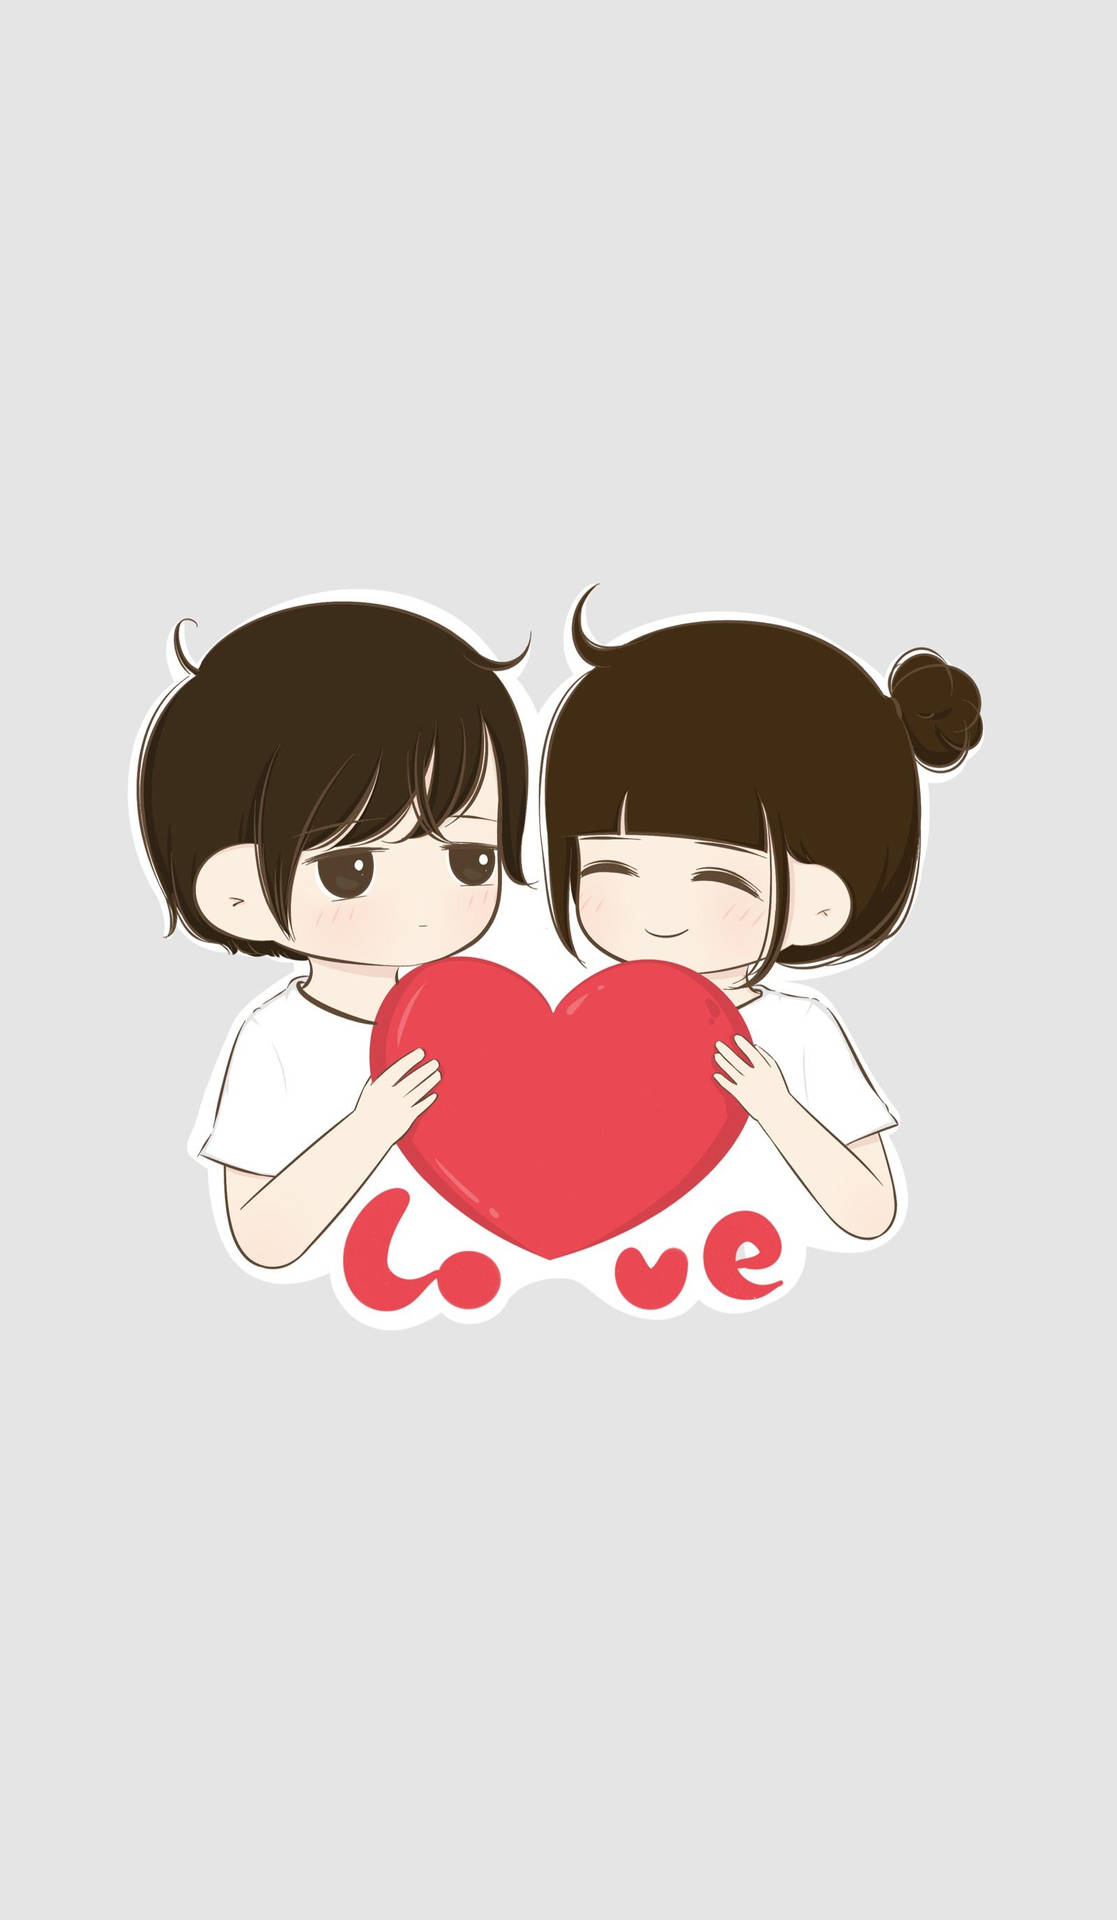 Heartfelt Embrace In Love Cartoon Background